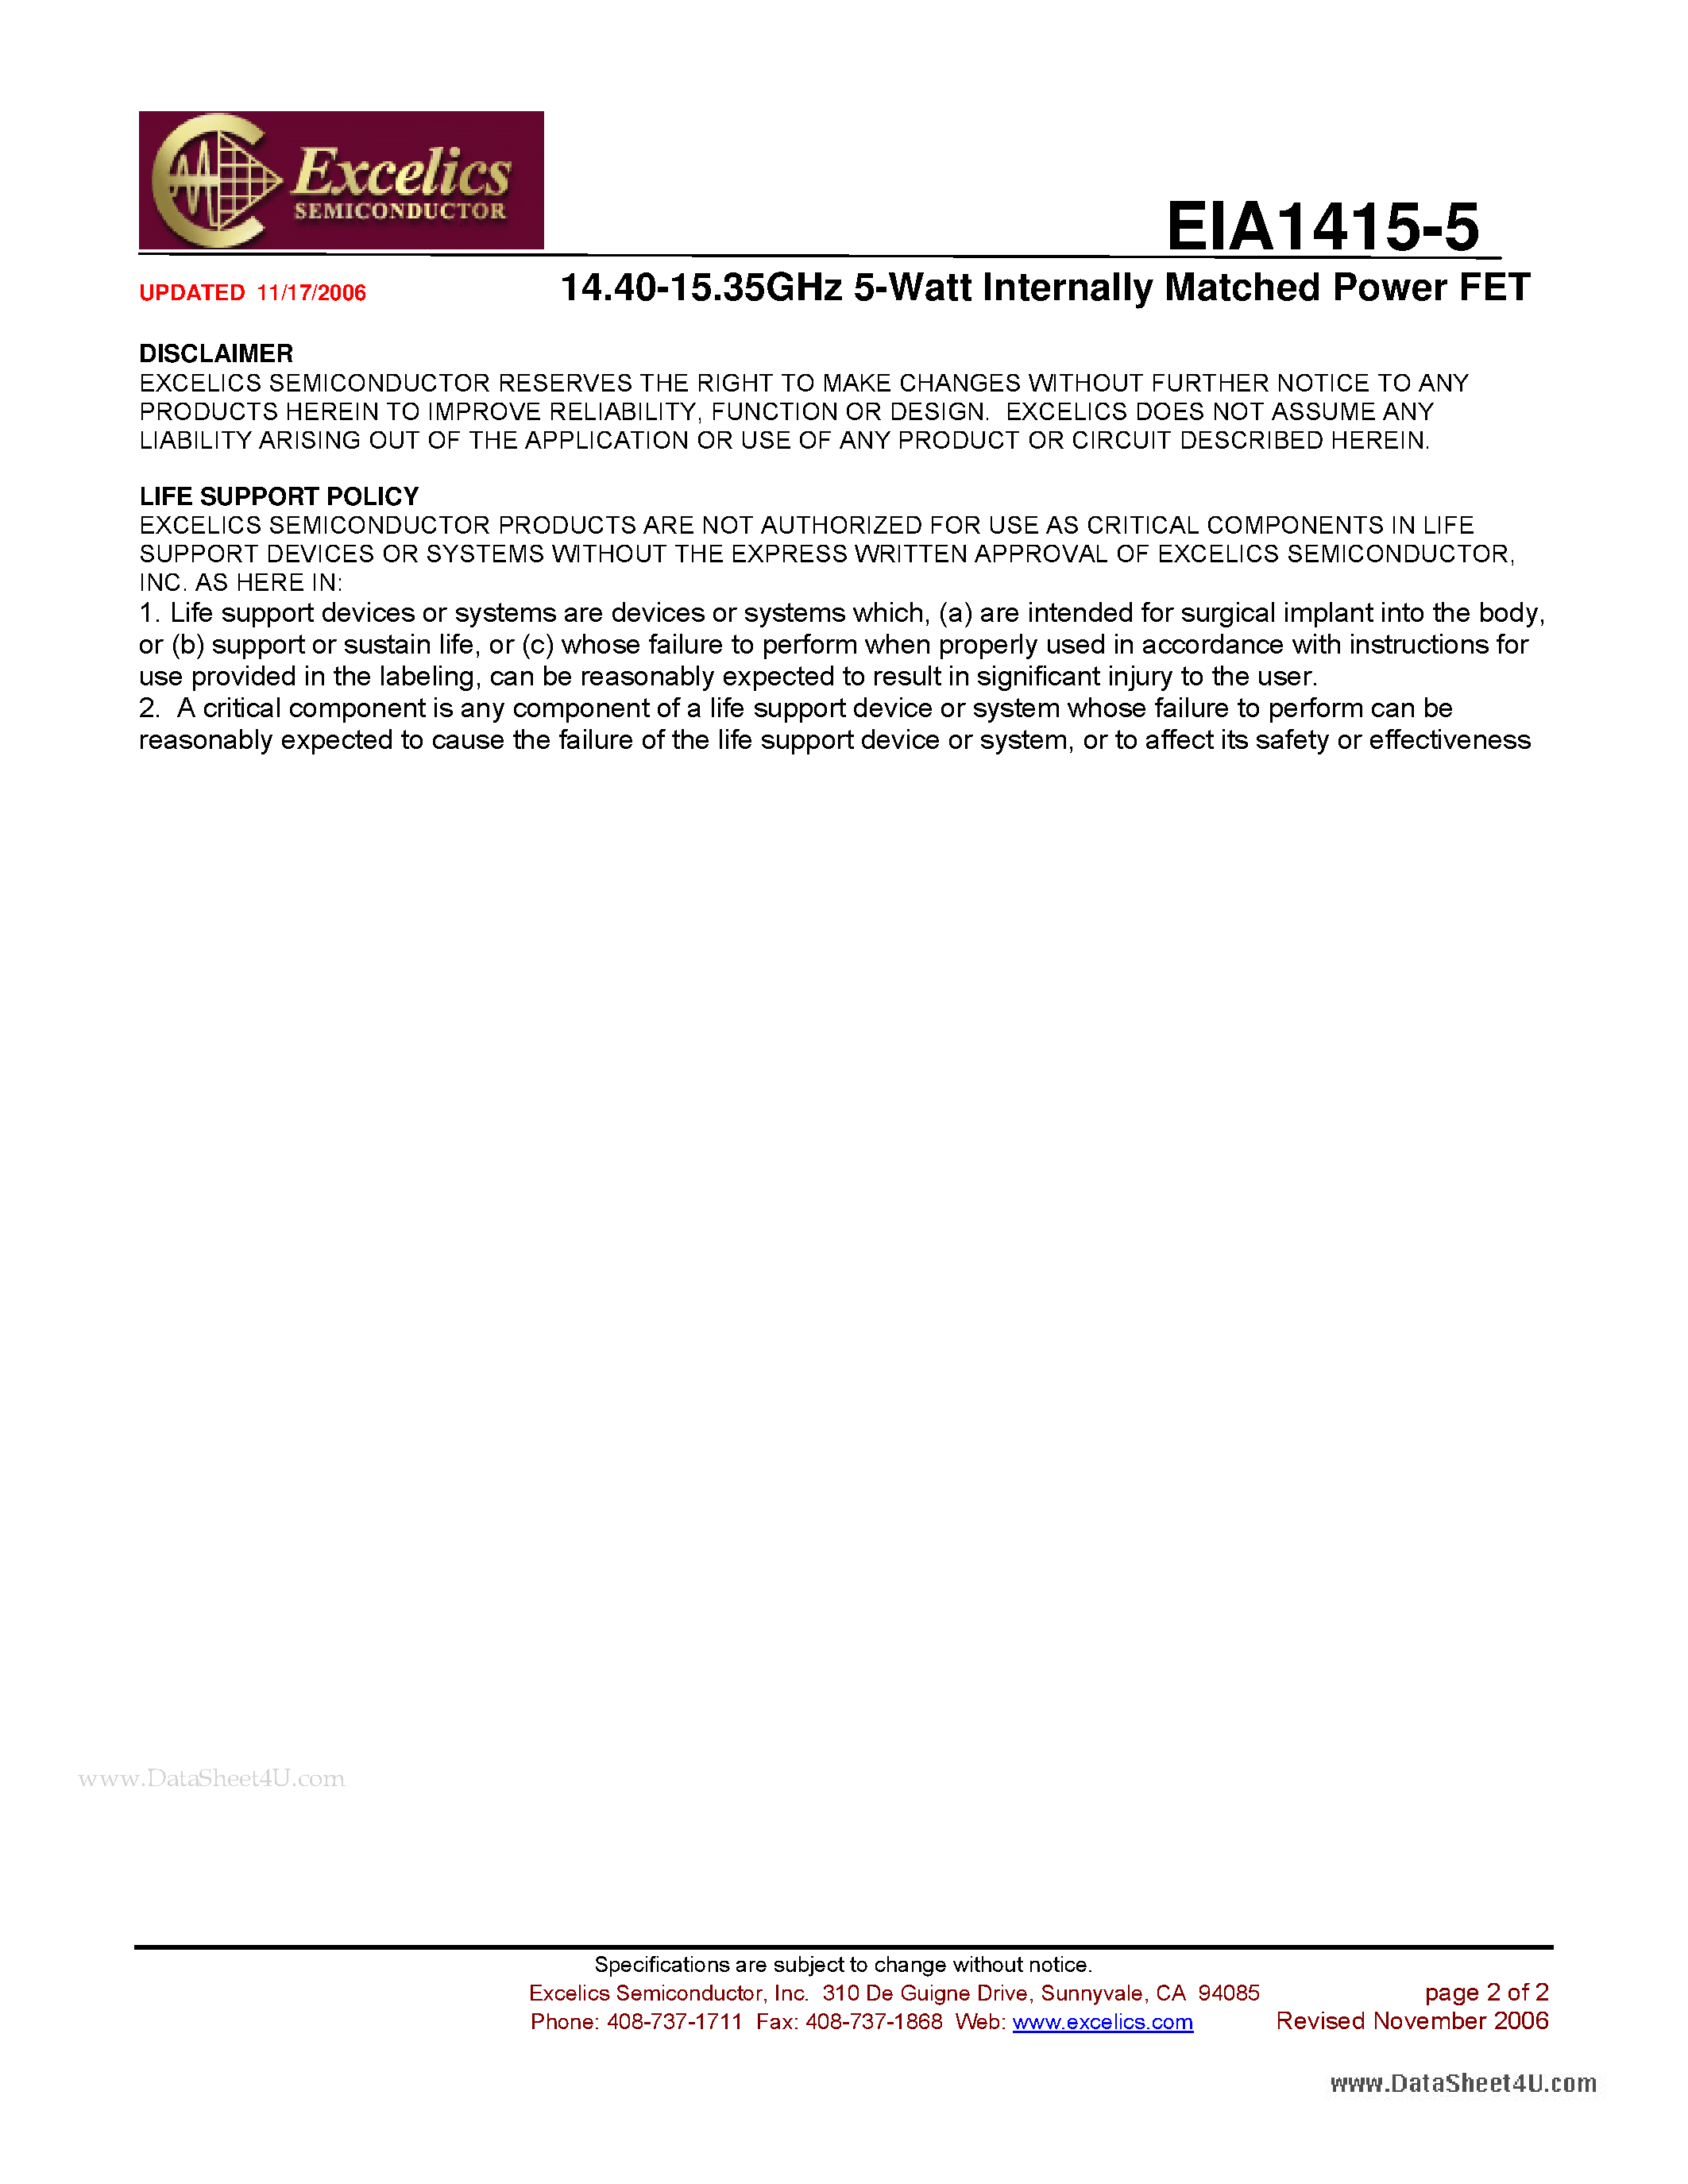 Datasheet EIA1415-5 - 14.40-15.35GHz 5-Watt Internally Matched Power FET page 2